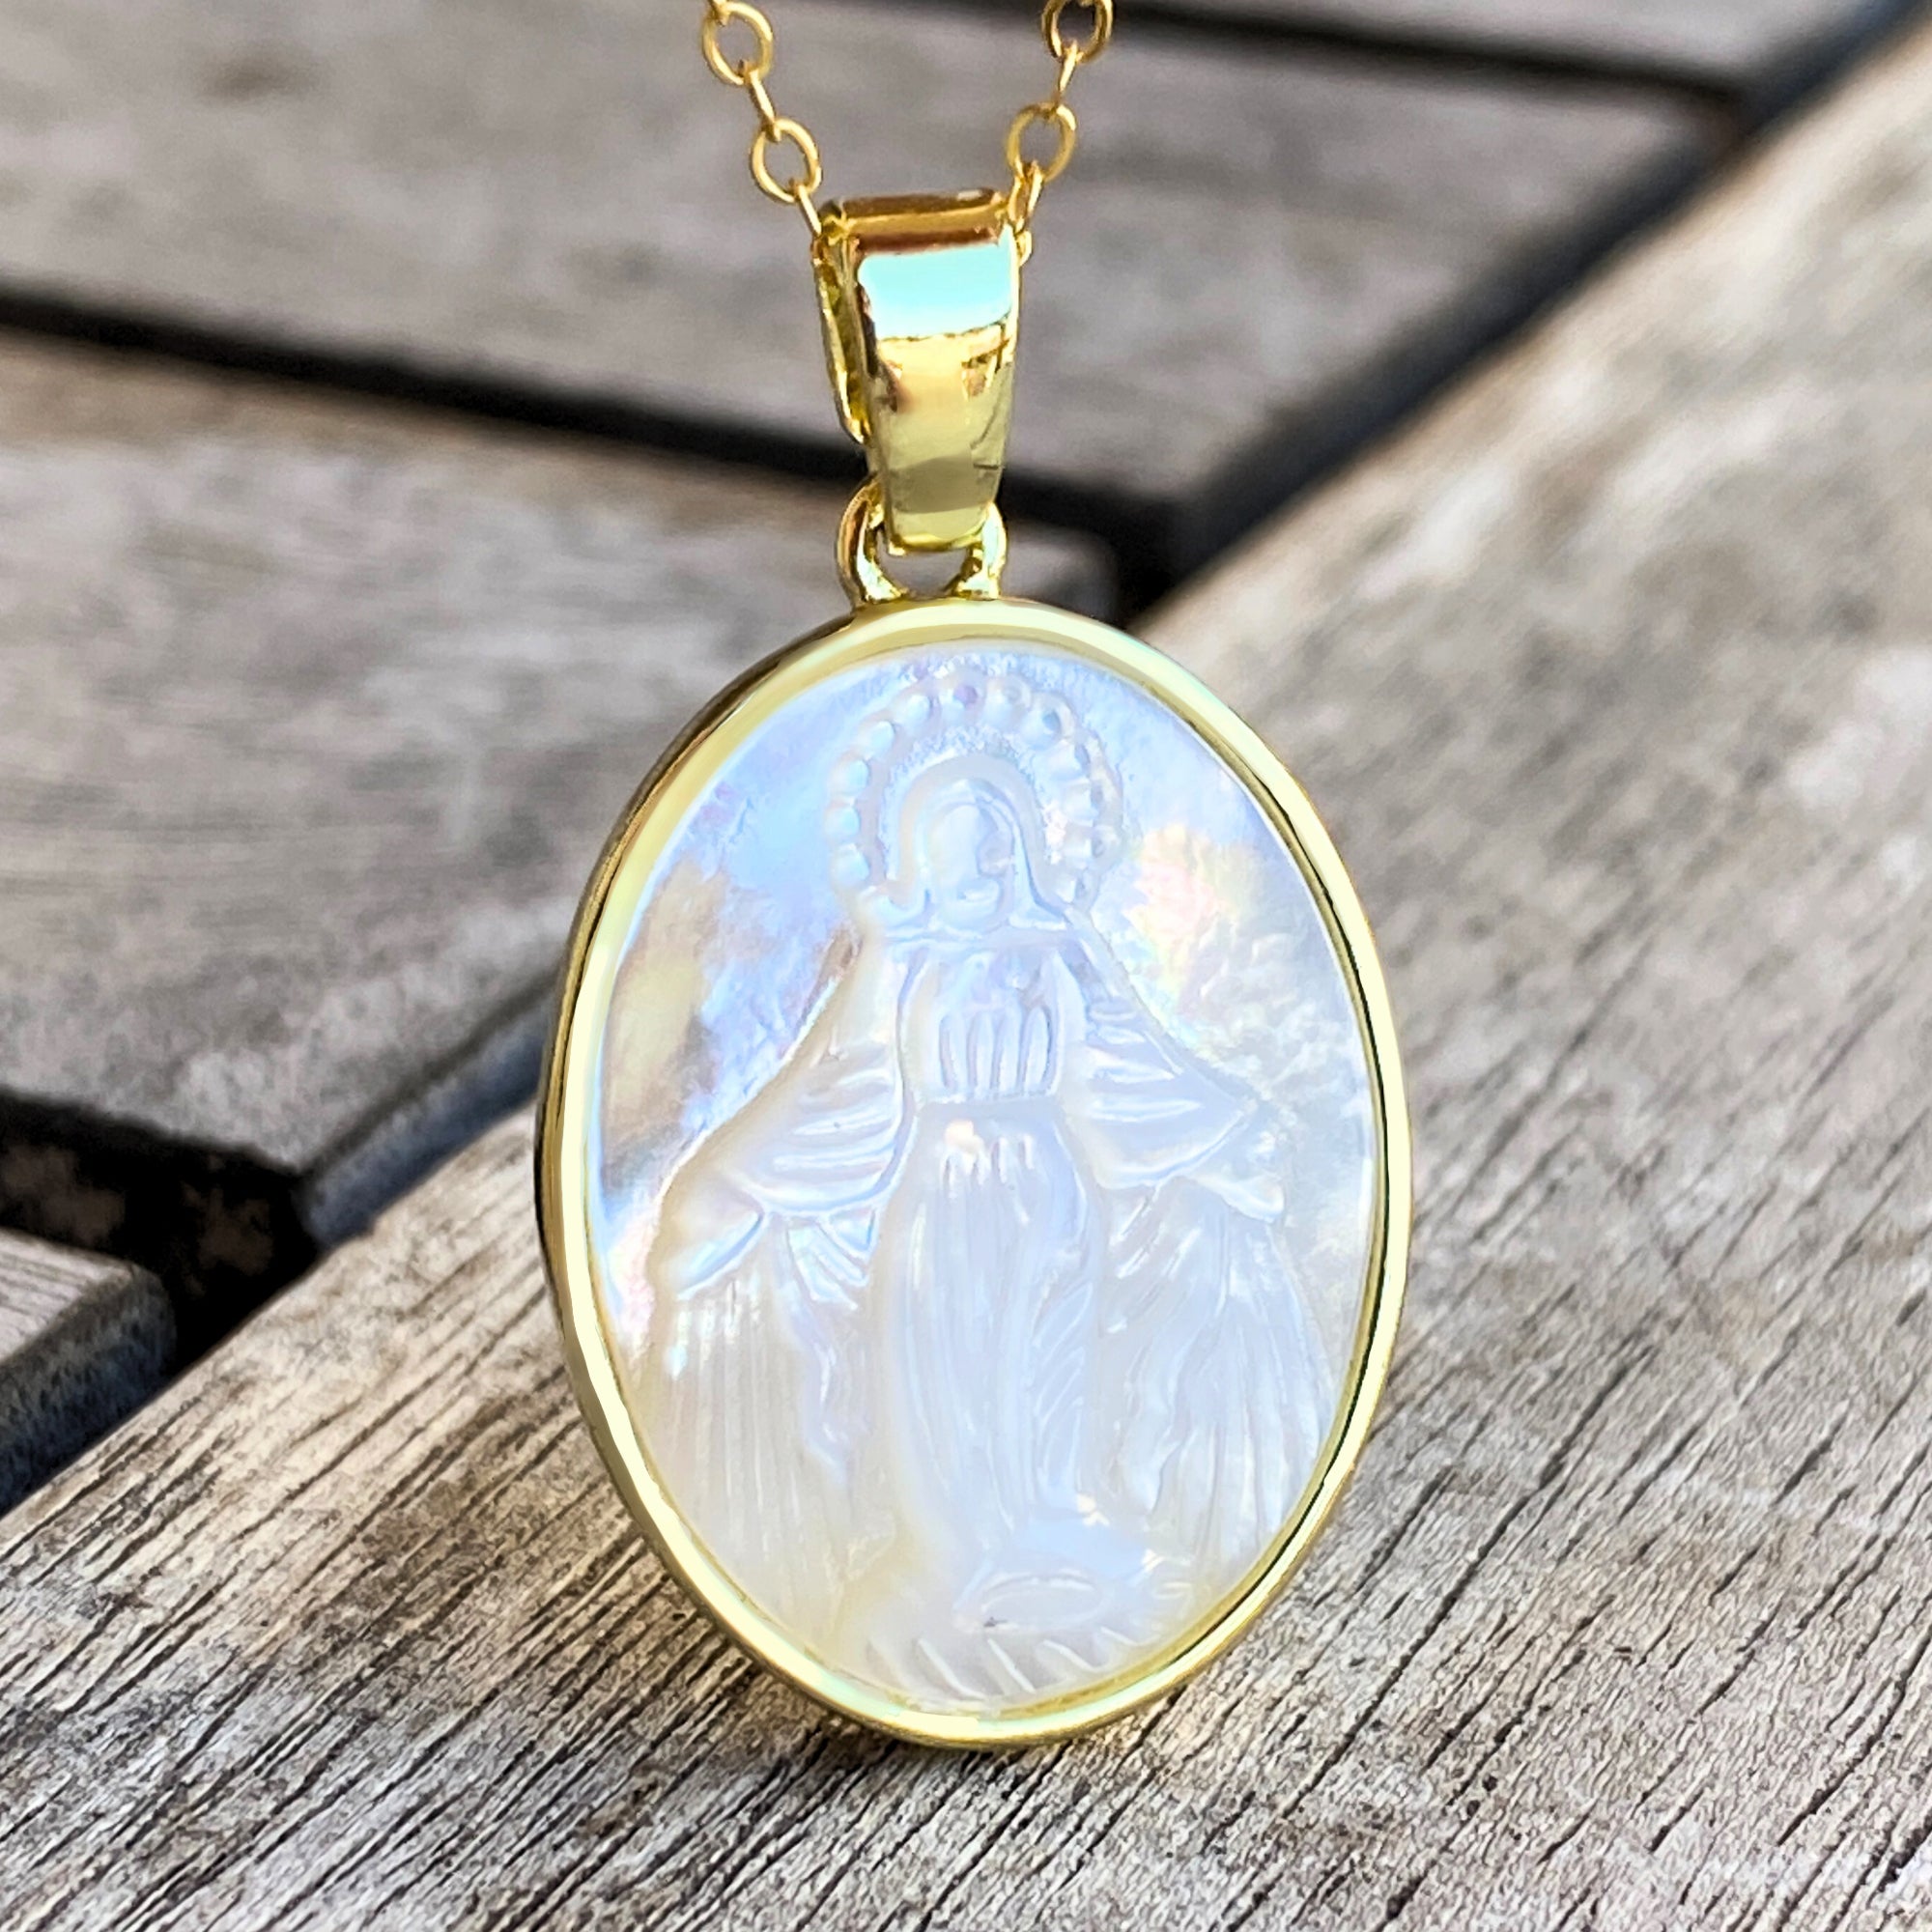 Medalla Milagrosa de la Virgen Maria con cadena / Miraculous Medal of the  Virgin Mary, with necklace – tamaño grande / large size